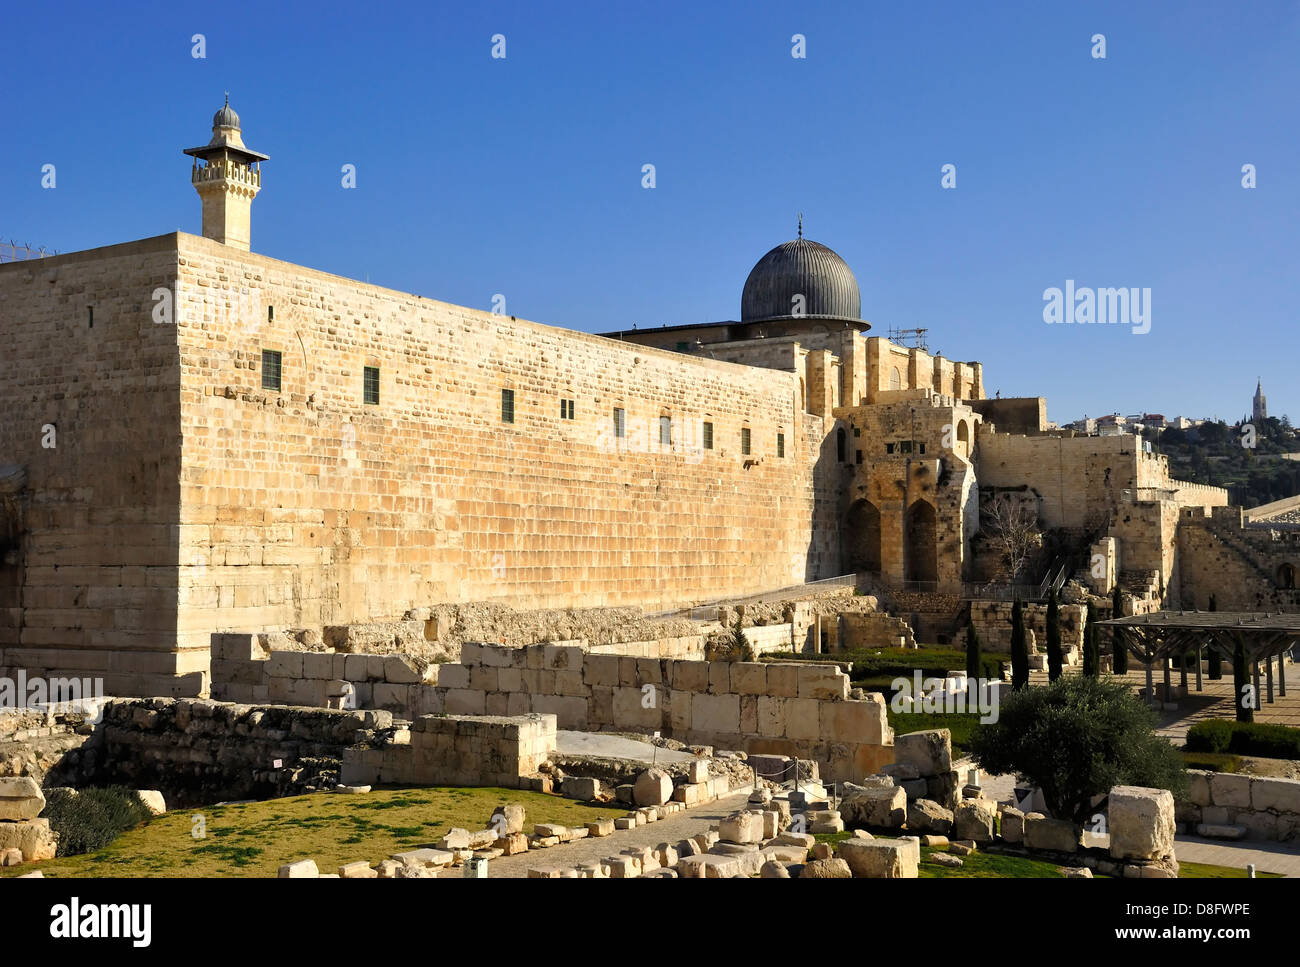 Al-Aqsa Mosque. Jerusalem Stock Photo